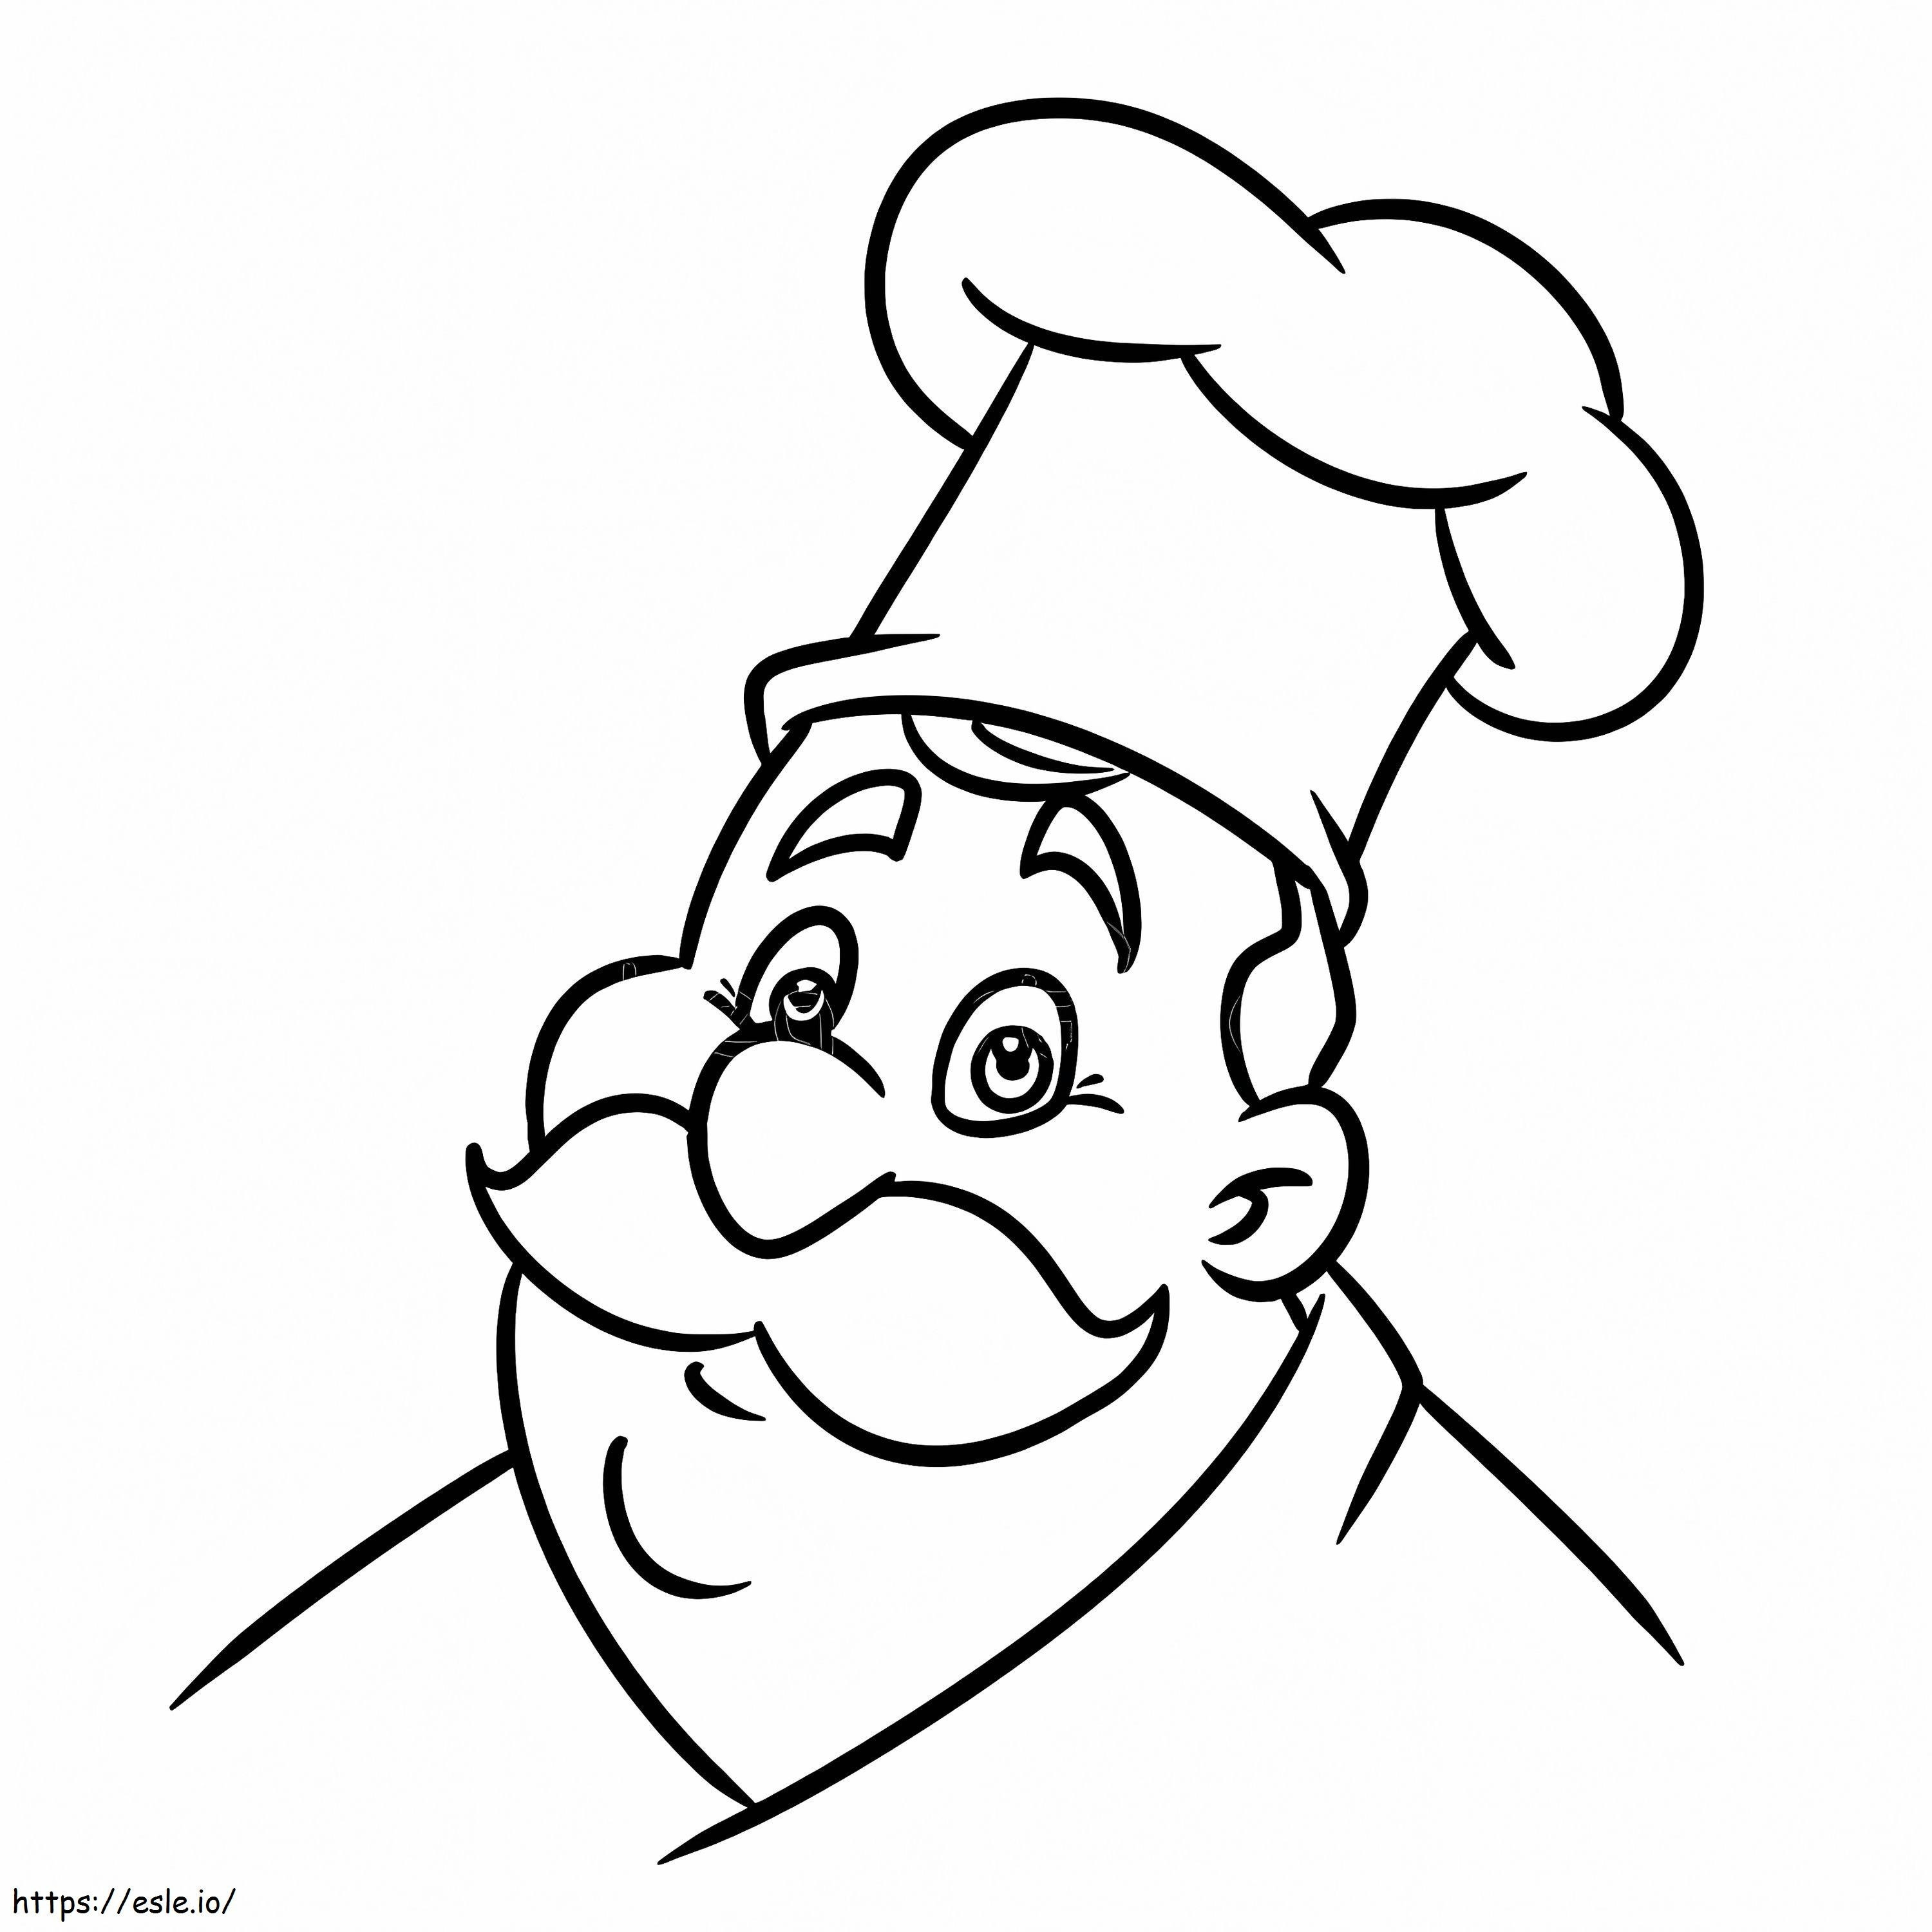 Chef culinario de dibujos animados para colorear